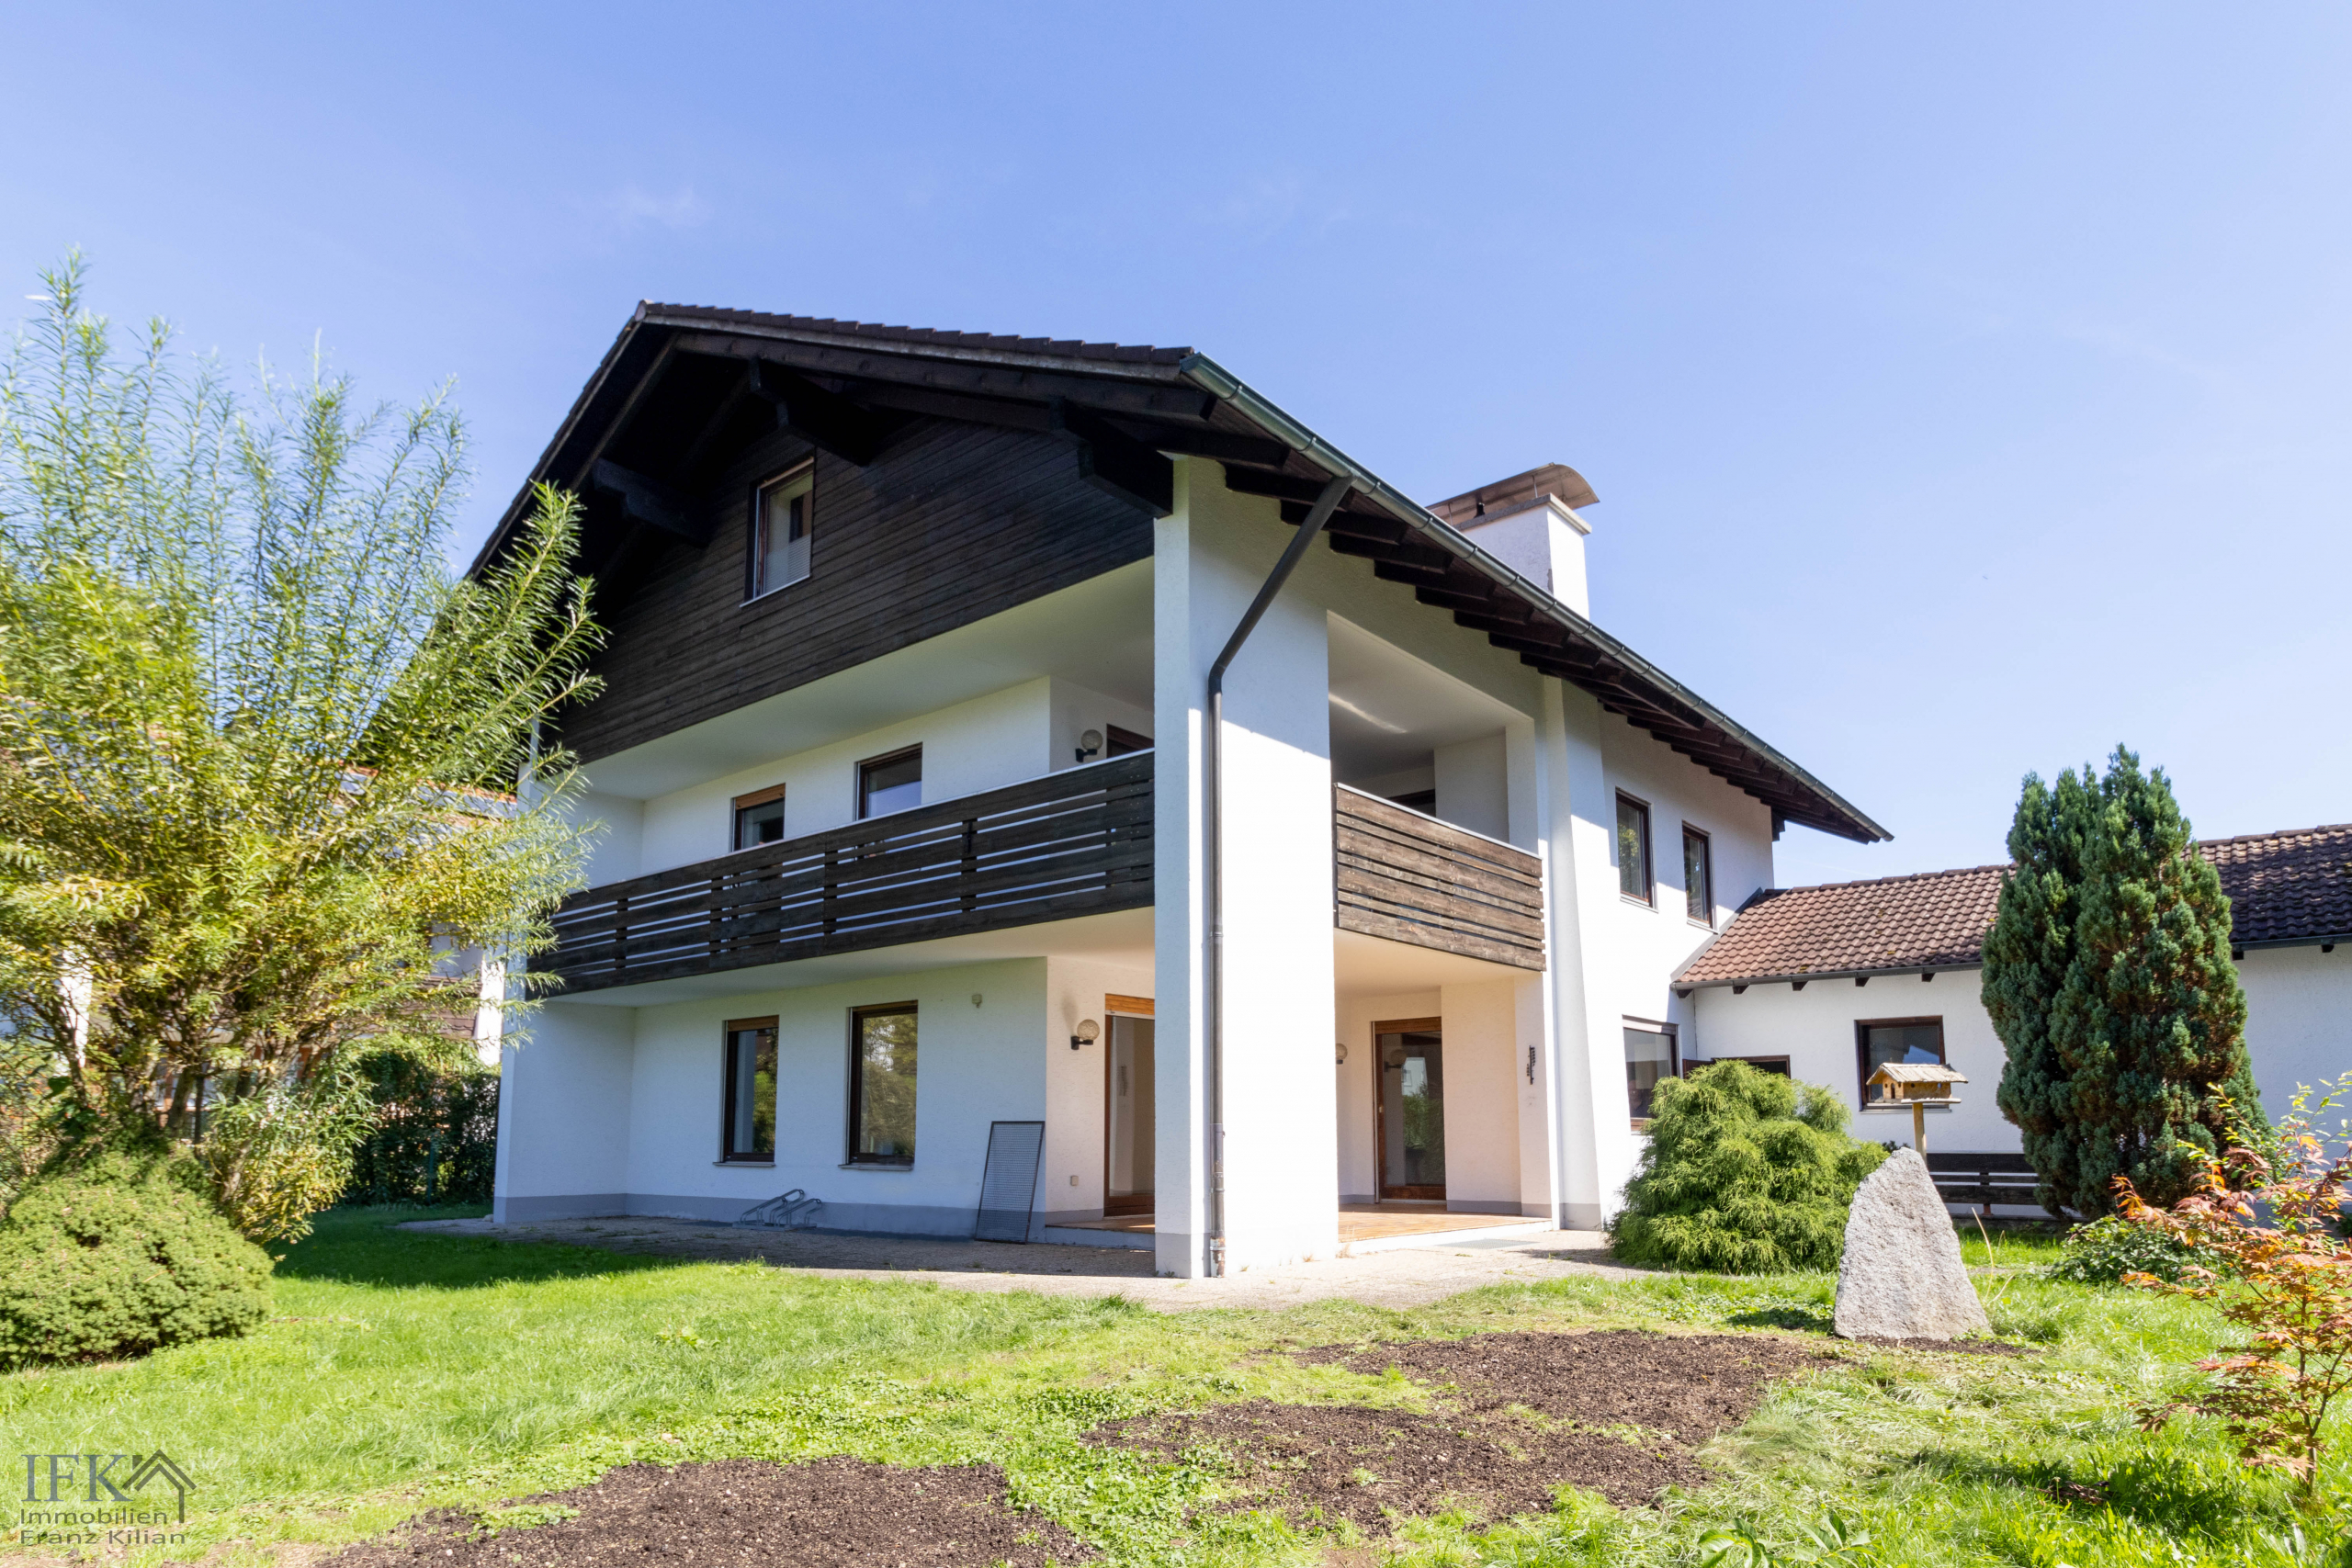 Großes, befristet vermietetes 3-Familienhaus in Bestlage von Weilheim - Gartenansicht